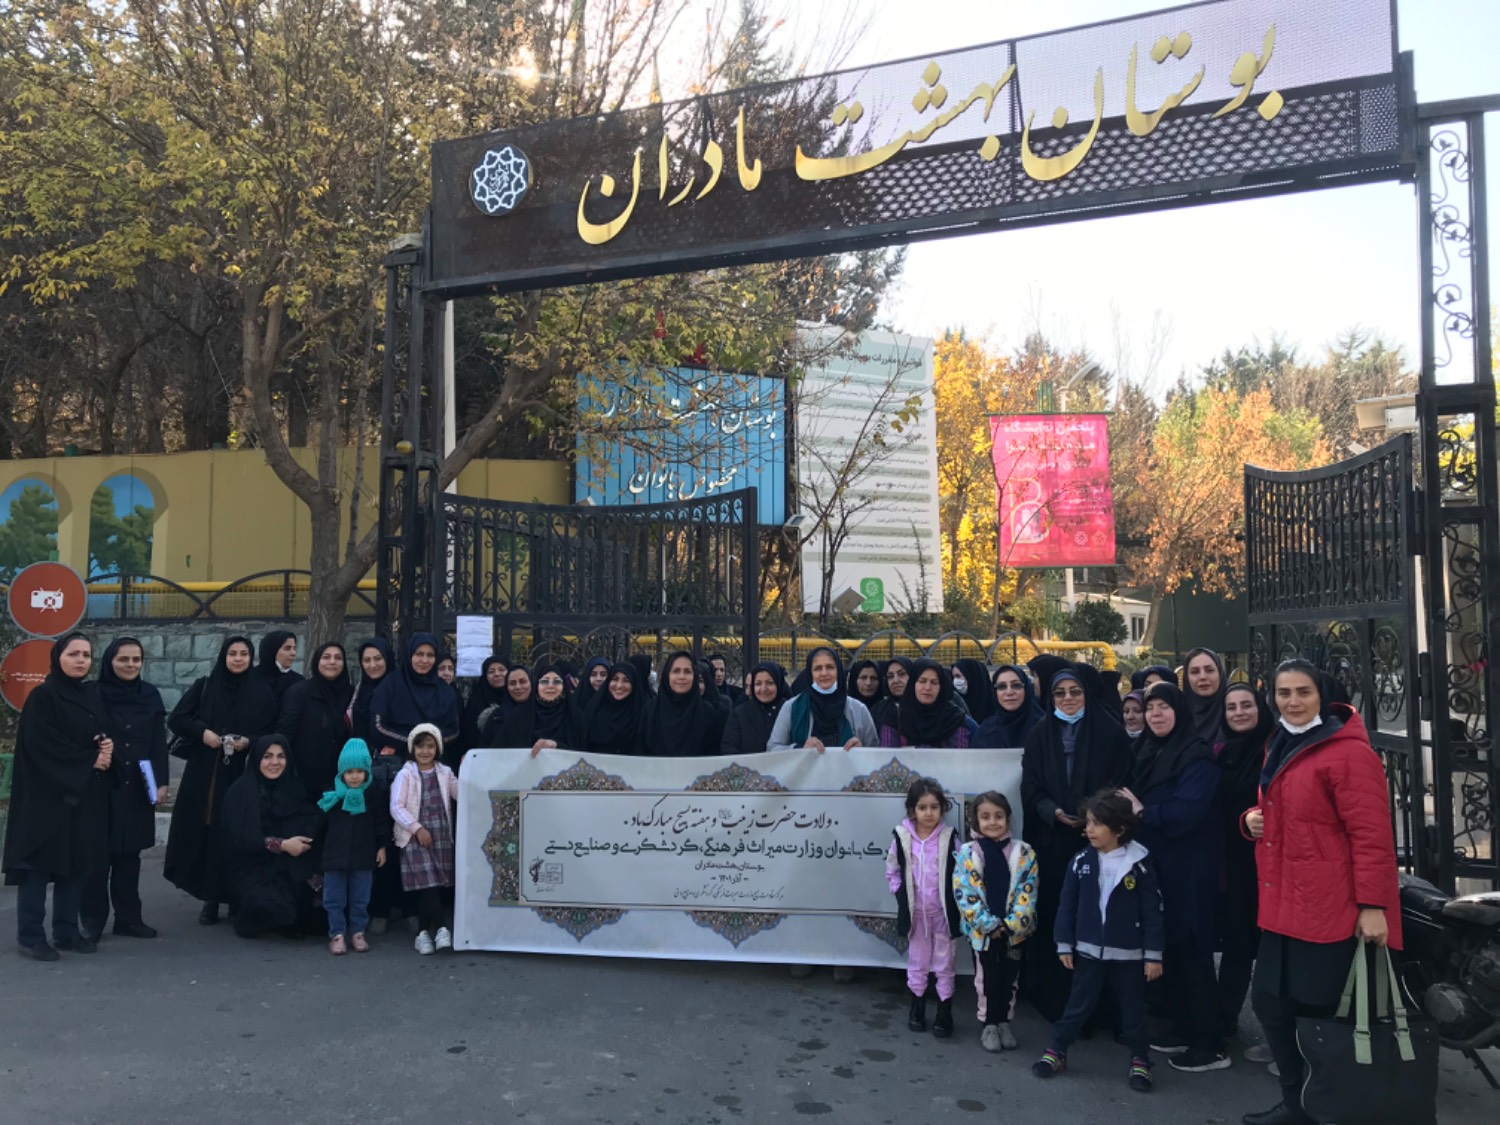 جشن ولادت حضرت زینب (س) در بوستان بهشت مادران برگزار شد